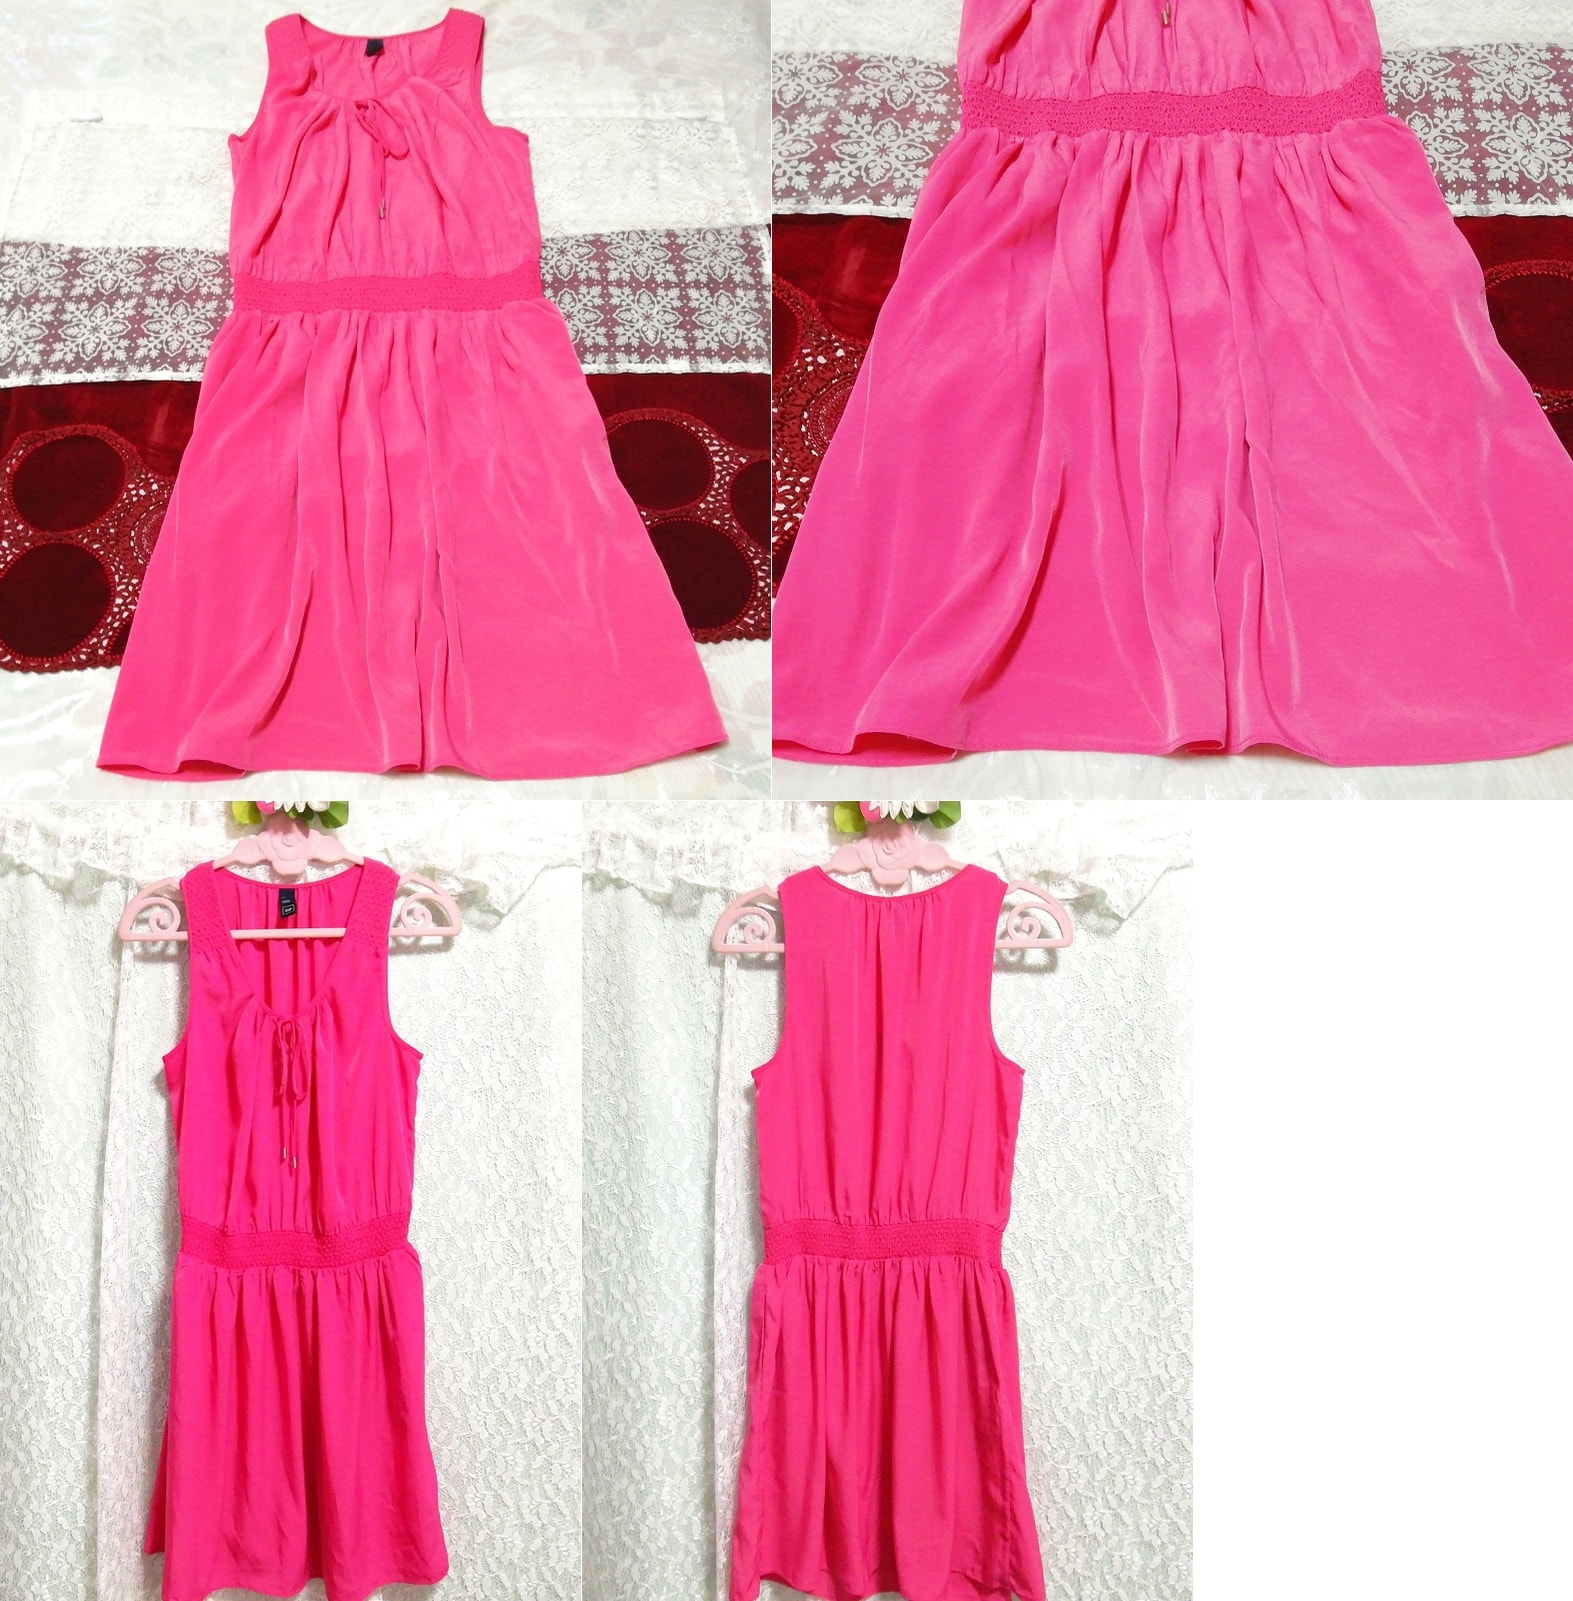 Флуоресцентно-розовое шифоновое полуплатье без рукавов, ночная рубашка-пеньюар, юбка длиной до колена, размер м